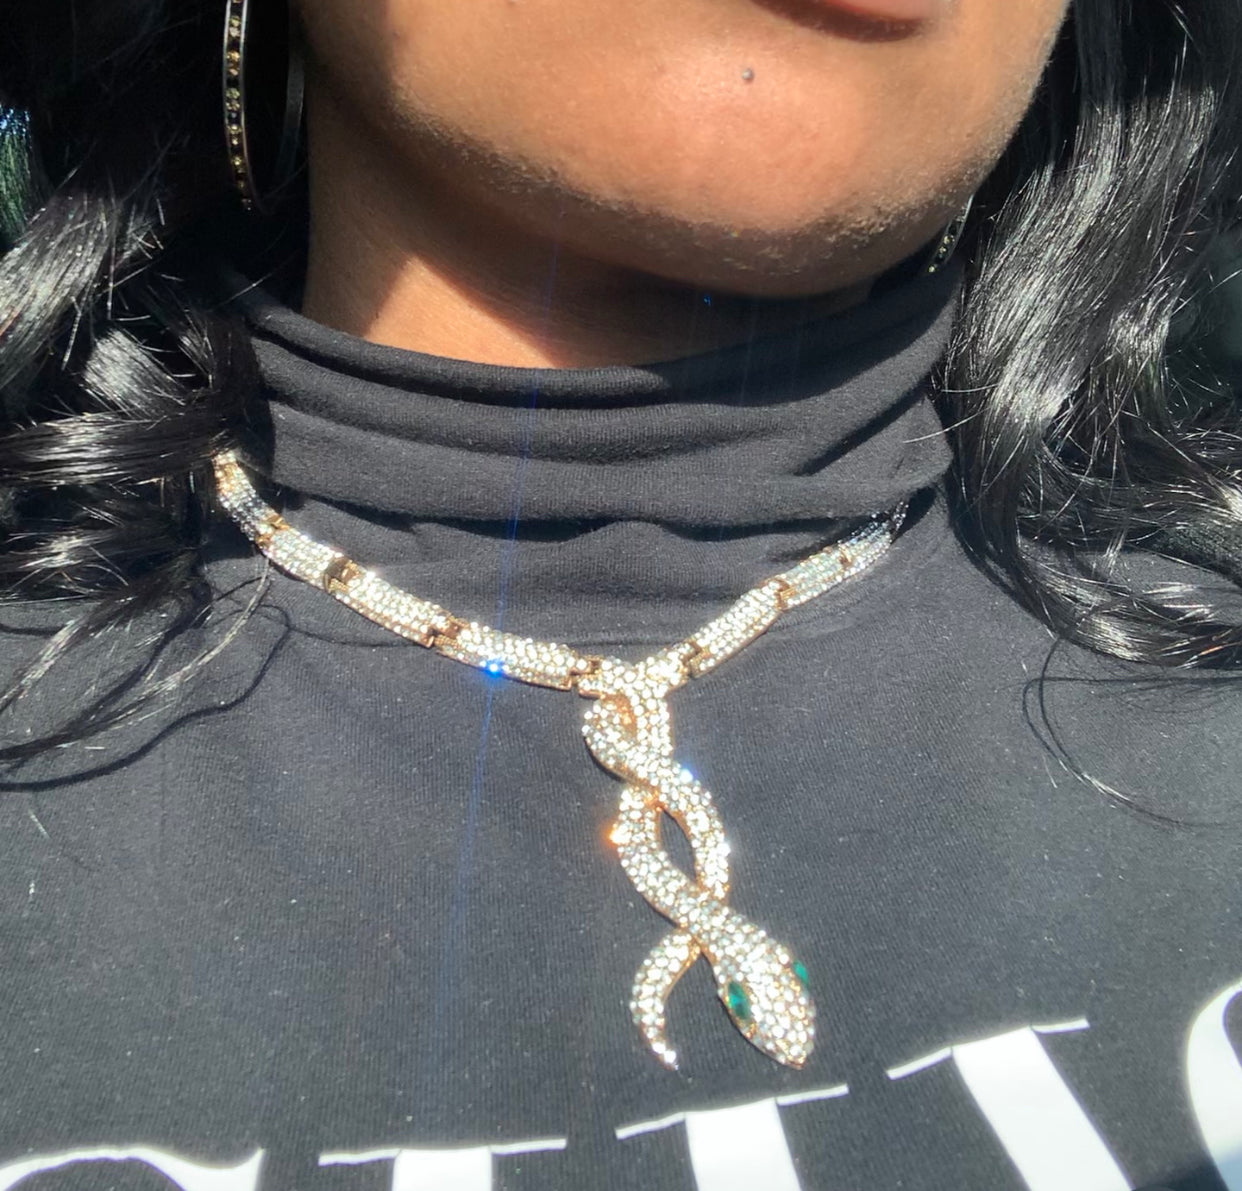 Crystal Snake Necklace